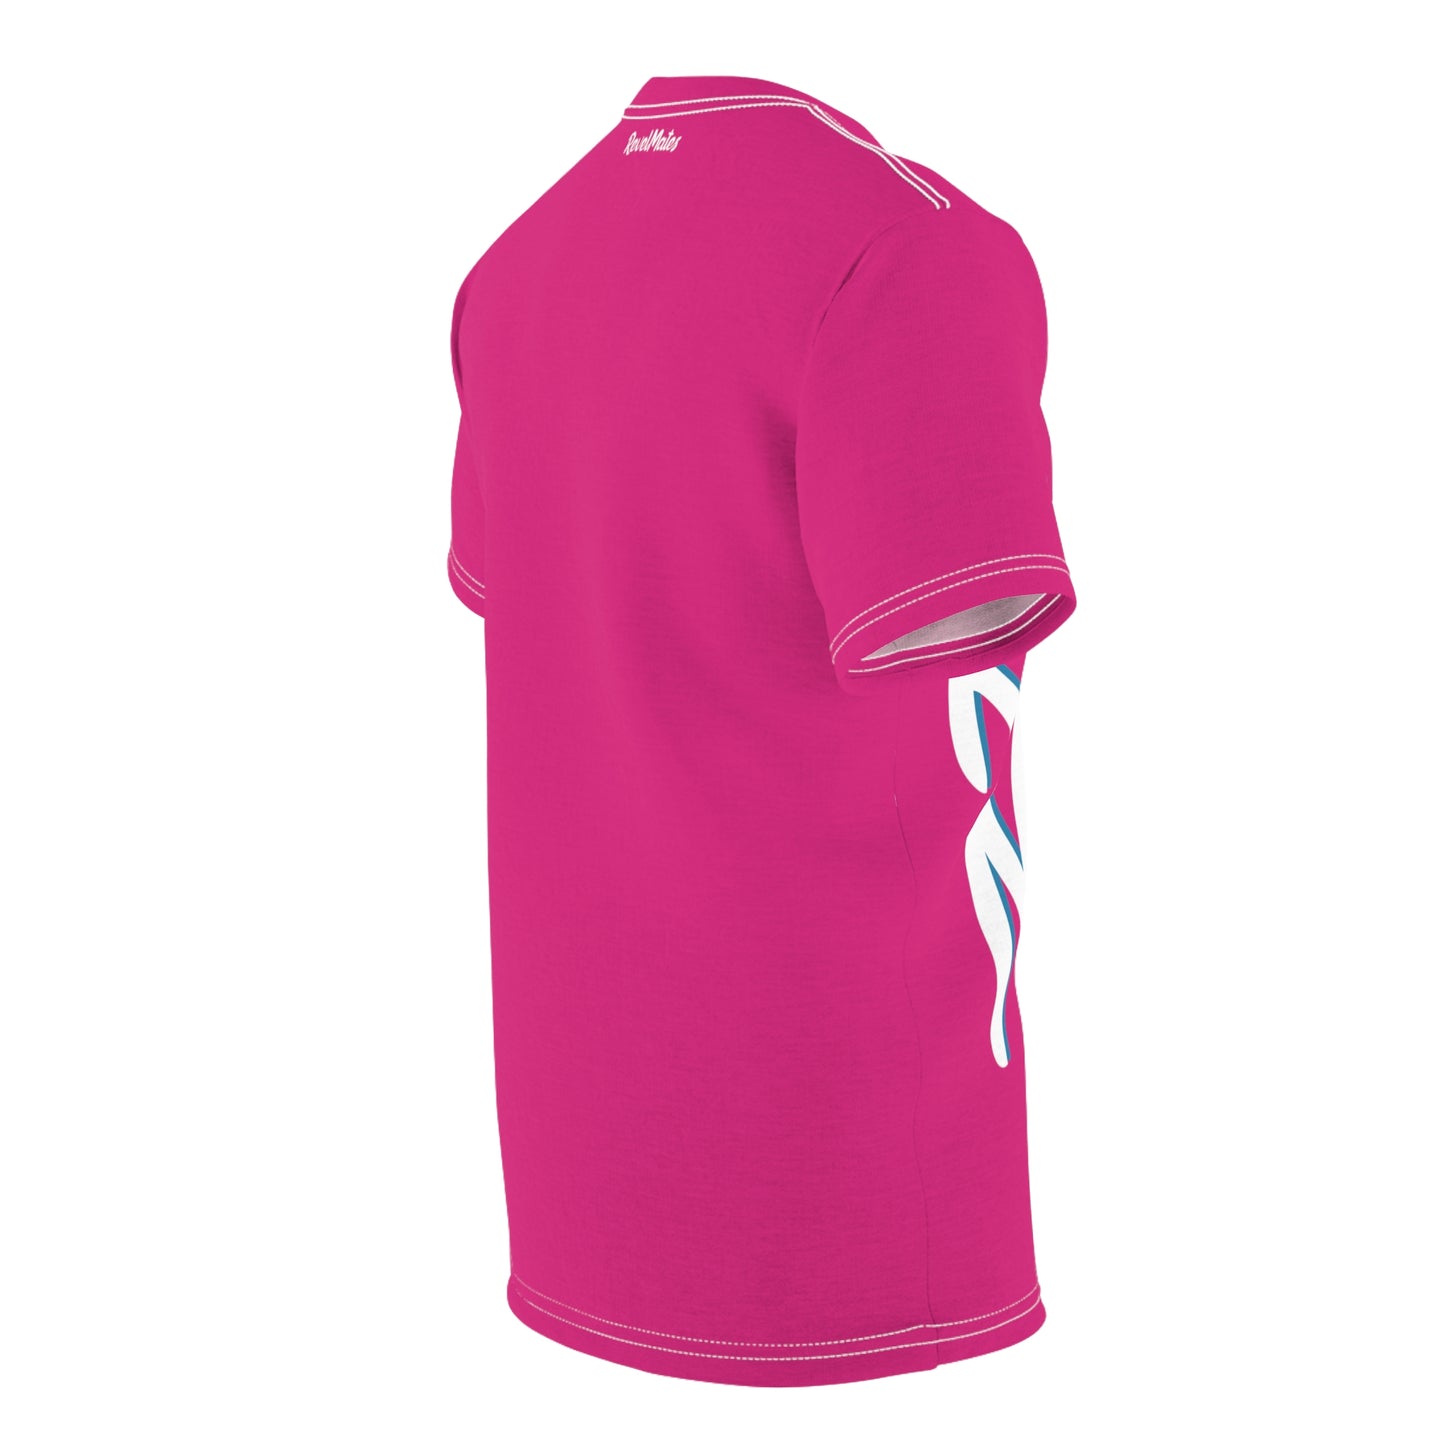 Unisex T-Shirt | All Over Print Tee | Fuchsia & White RevelMates Design